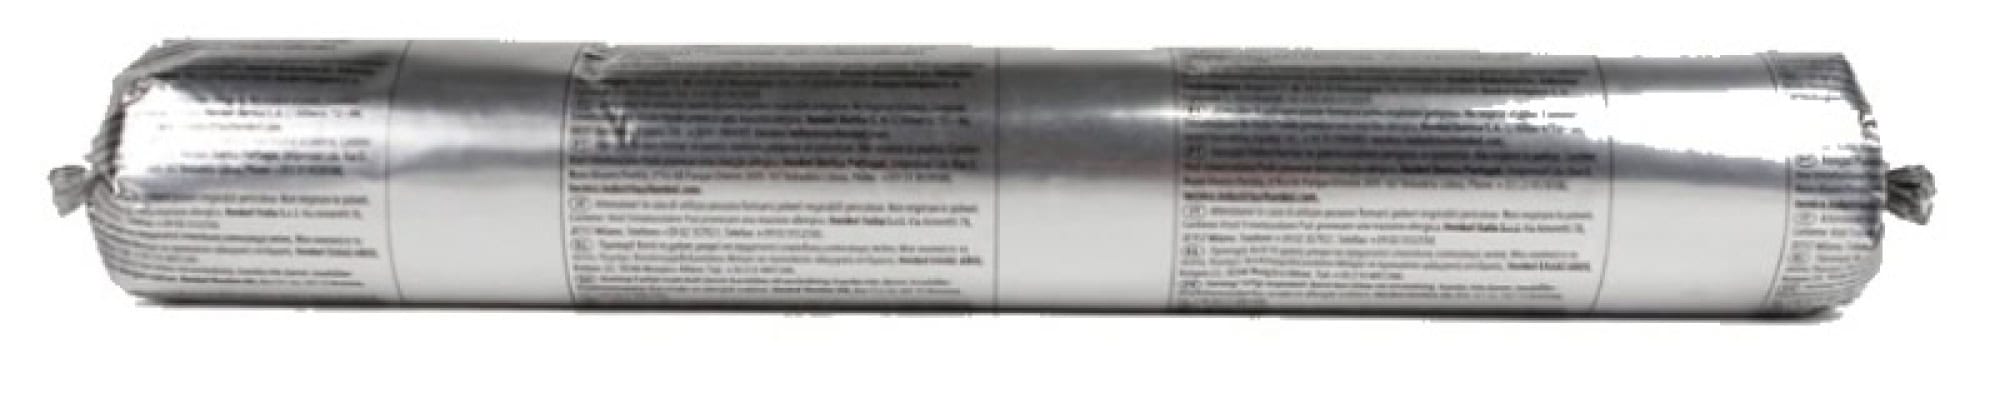 Henkel™ Teroson® Silanmodifizierter Polymer Kleb-/Dichtstoff MS 930, 570 ml Folienbeutel, Schwarz, Thixotrop, 1K, 2496654, Für Universelle Anwendungen